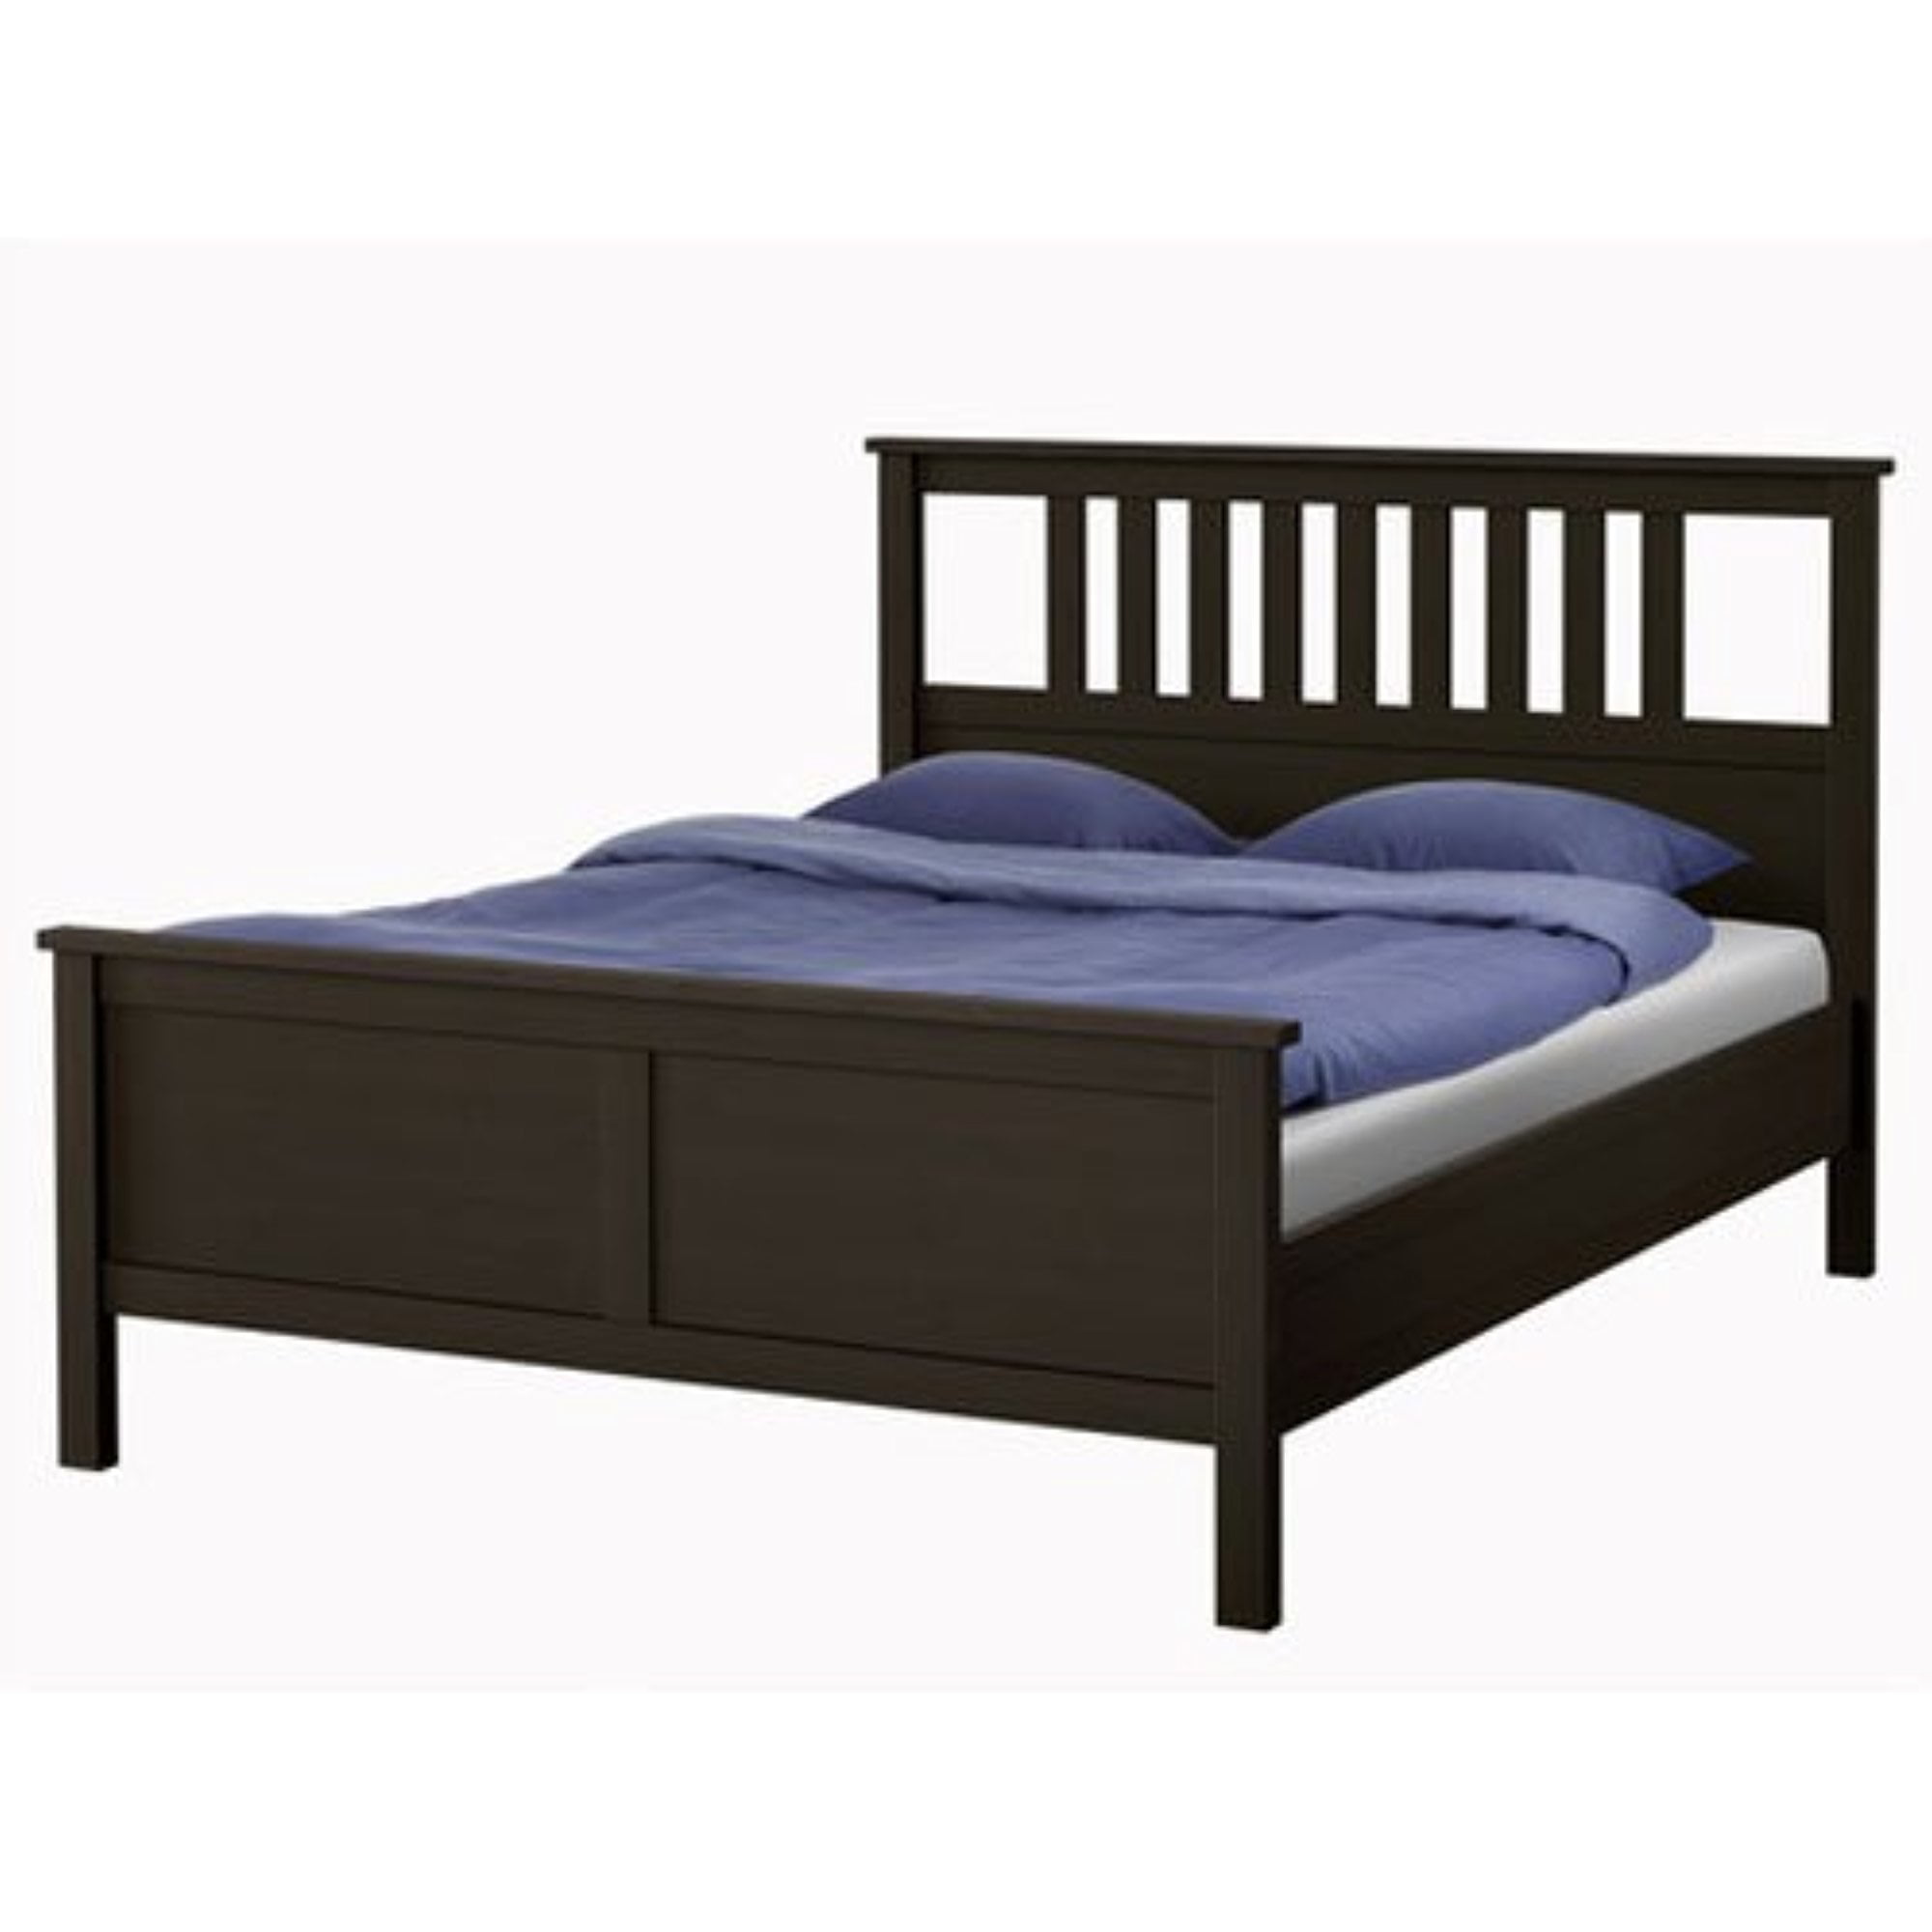 Ikea Hemnes Queen Bed Frame Black Brown, Ikea Pine Wood Queen Bed Frame